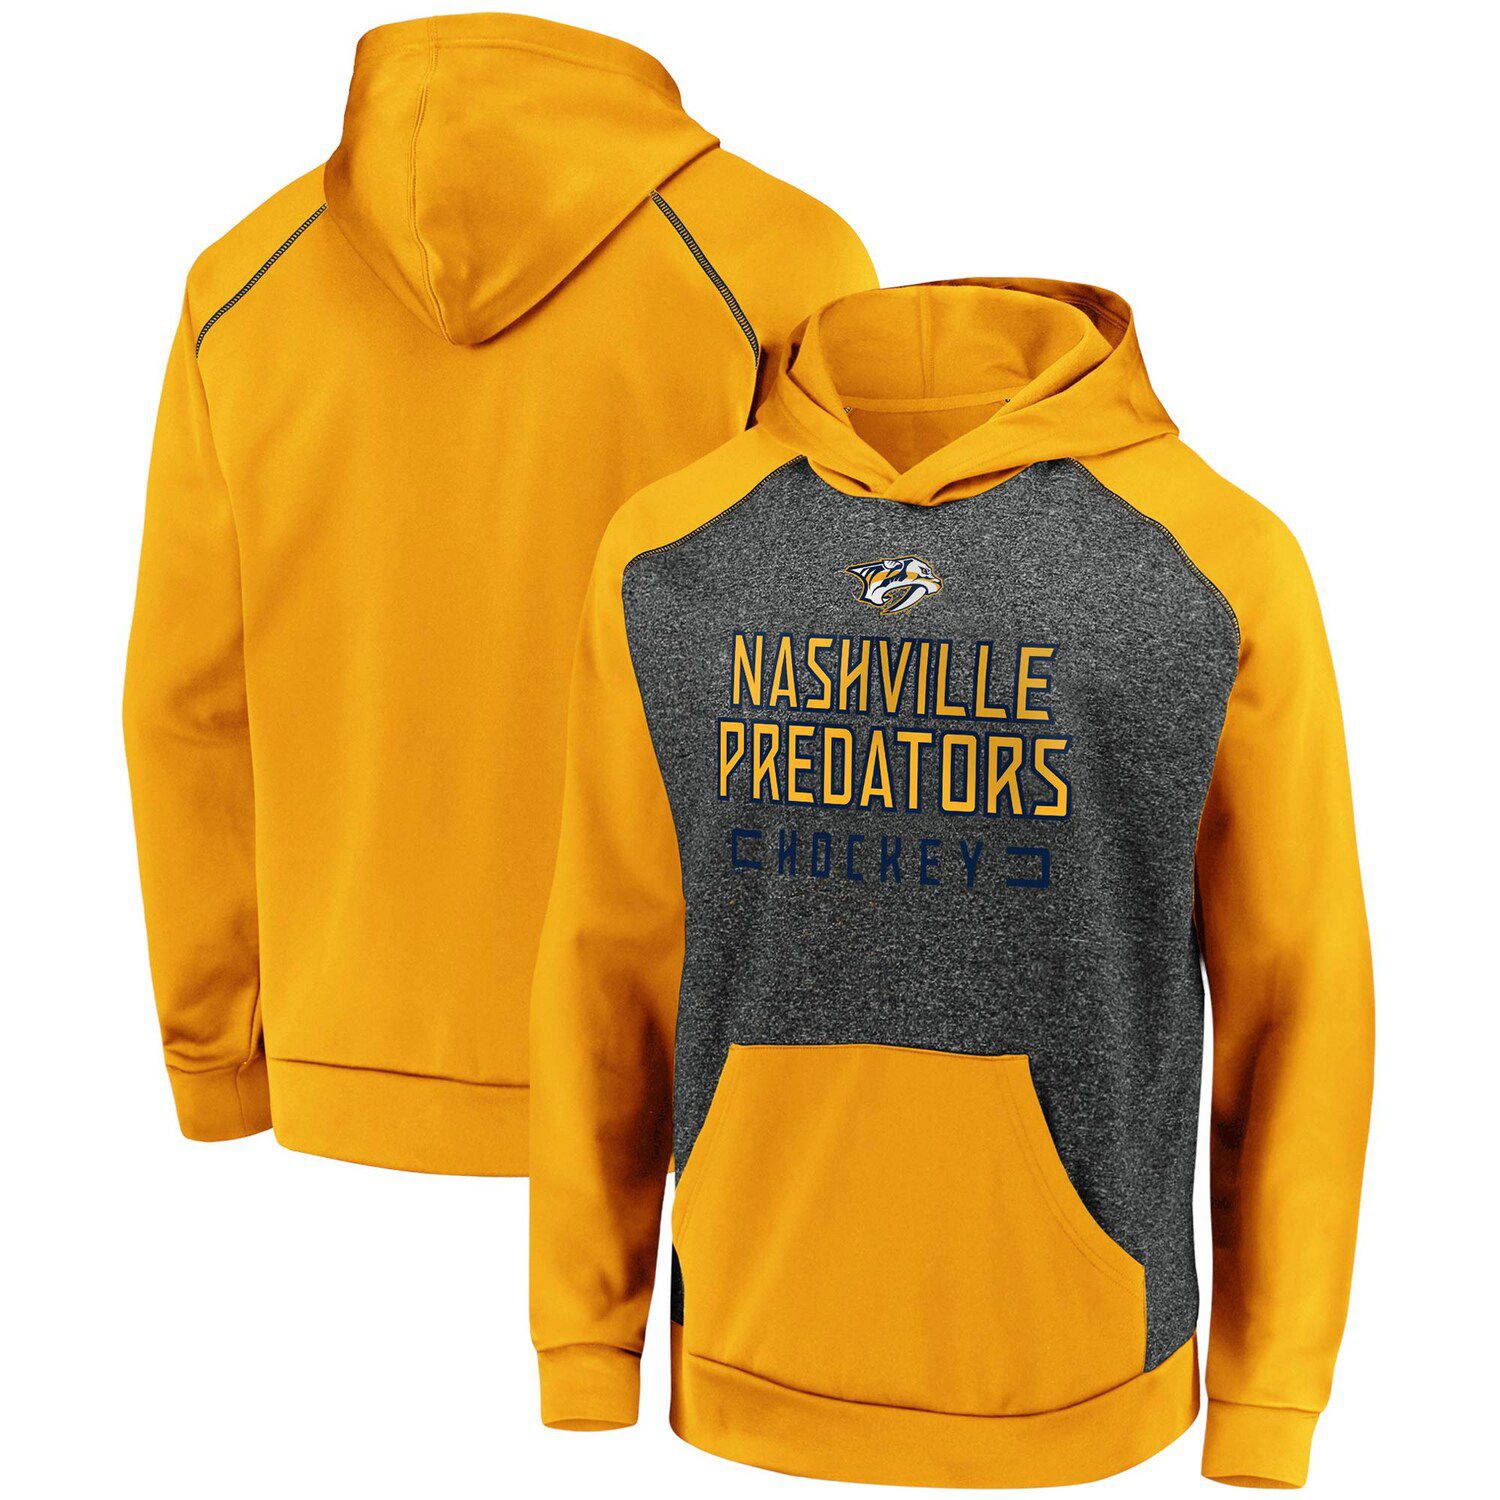 predators hoodies